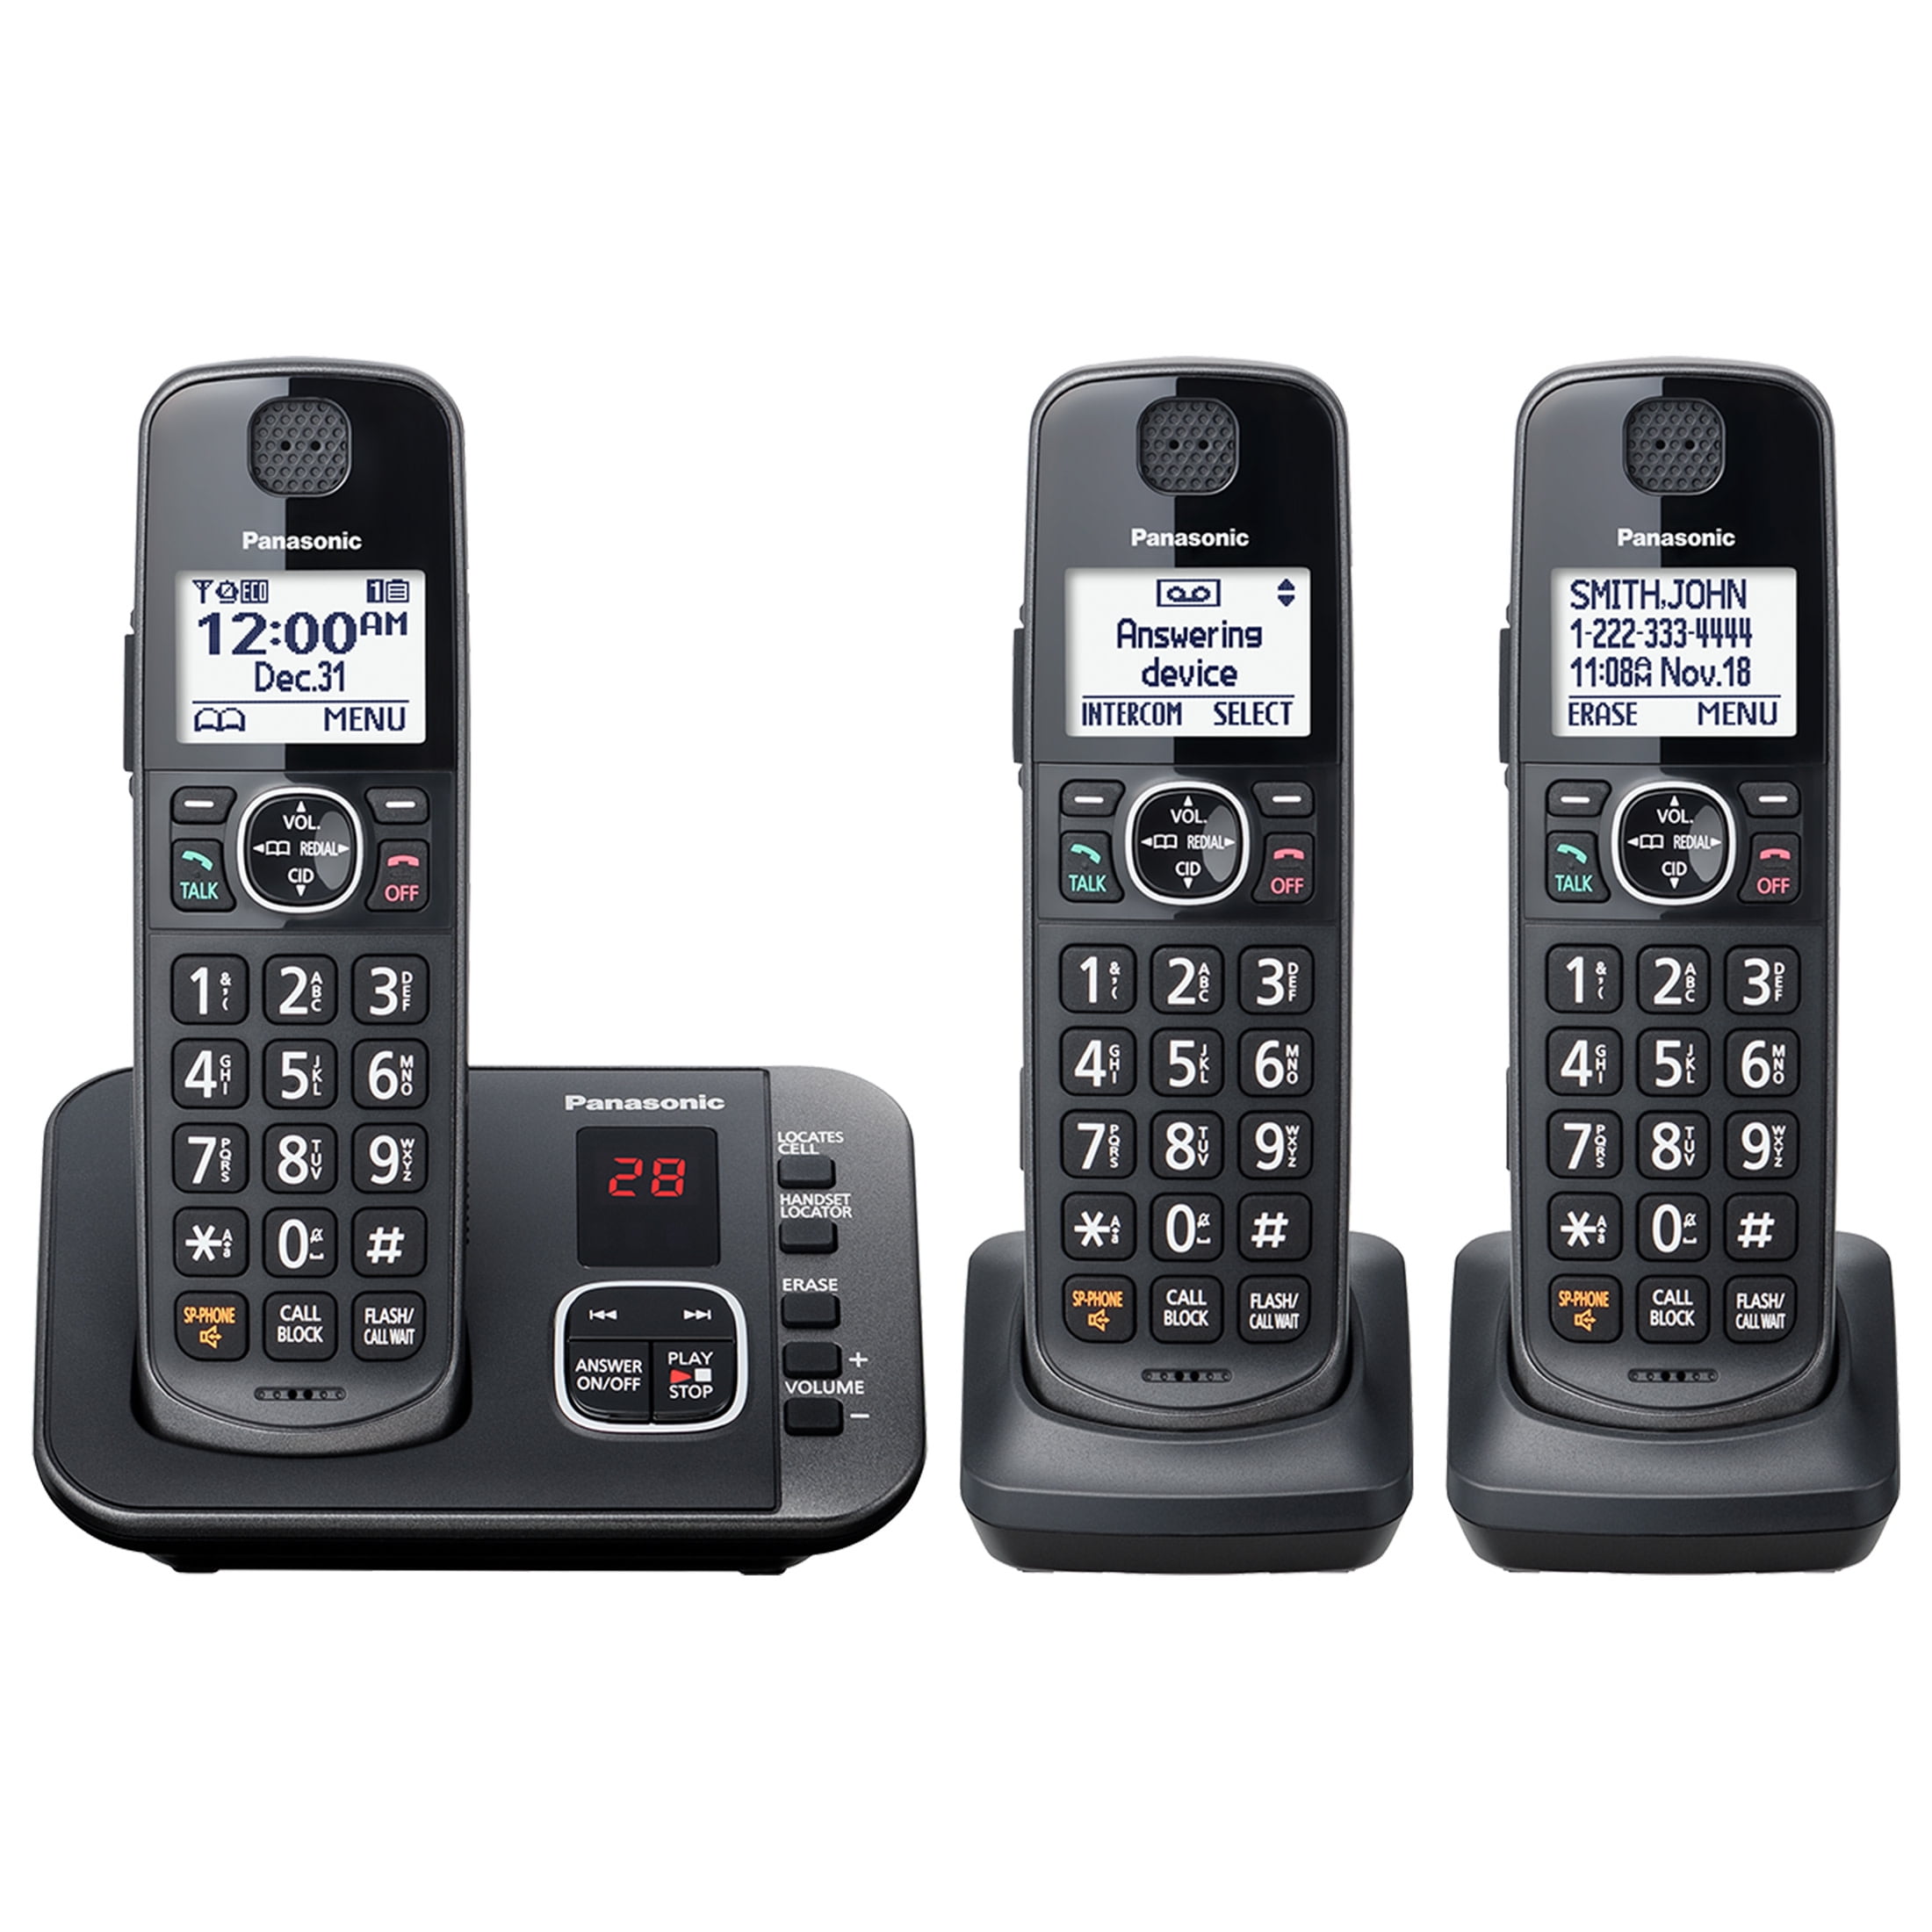  Tyler TBBP-4-WH Teléfono para personas mayores - Teléfono fijo  de botón grande para ancianos con altavoz, marcación rápida, control de  volumen de timbre, montaje en pared, números fáciles de ver y 